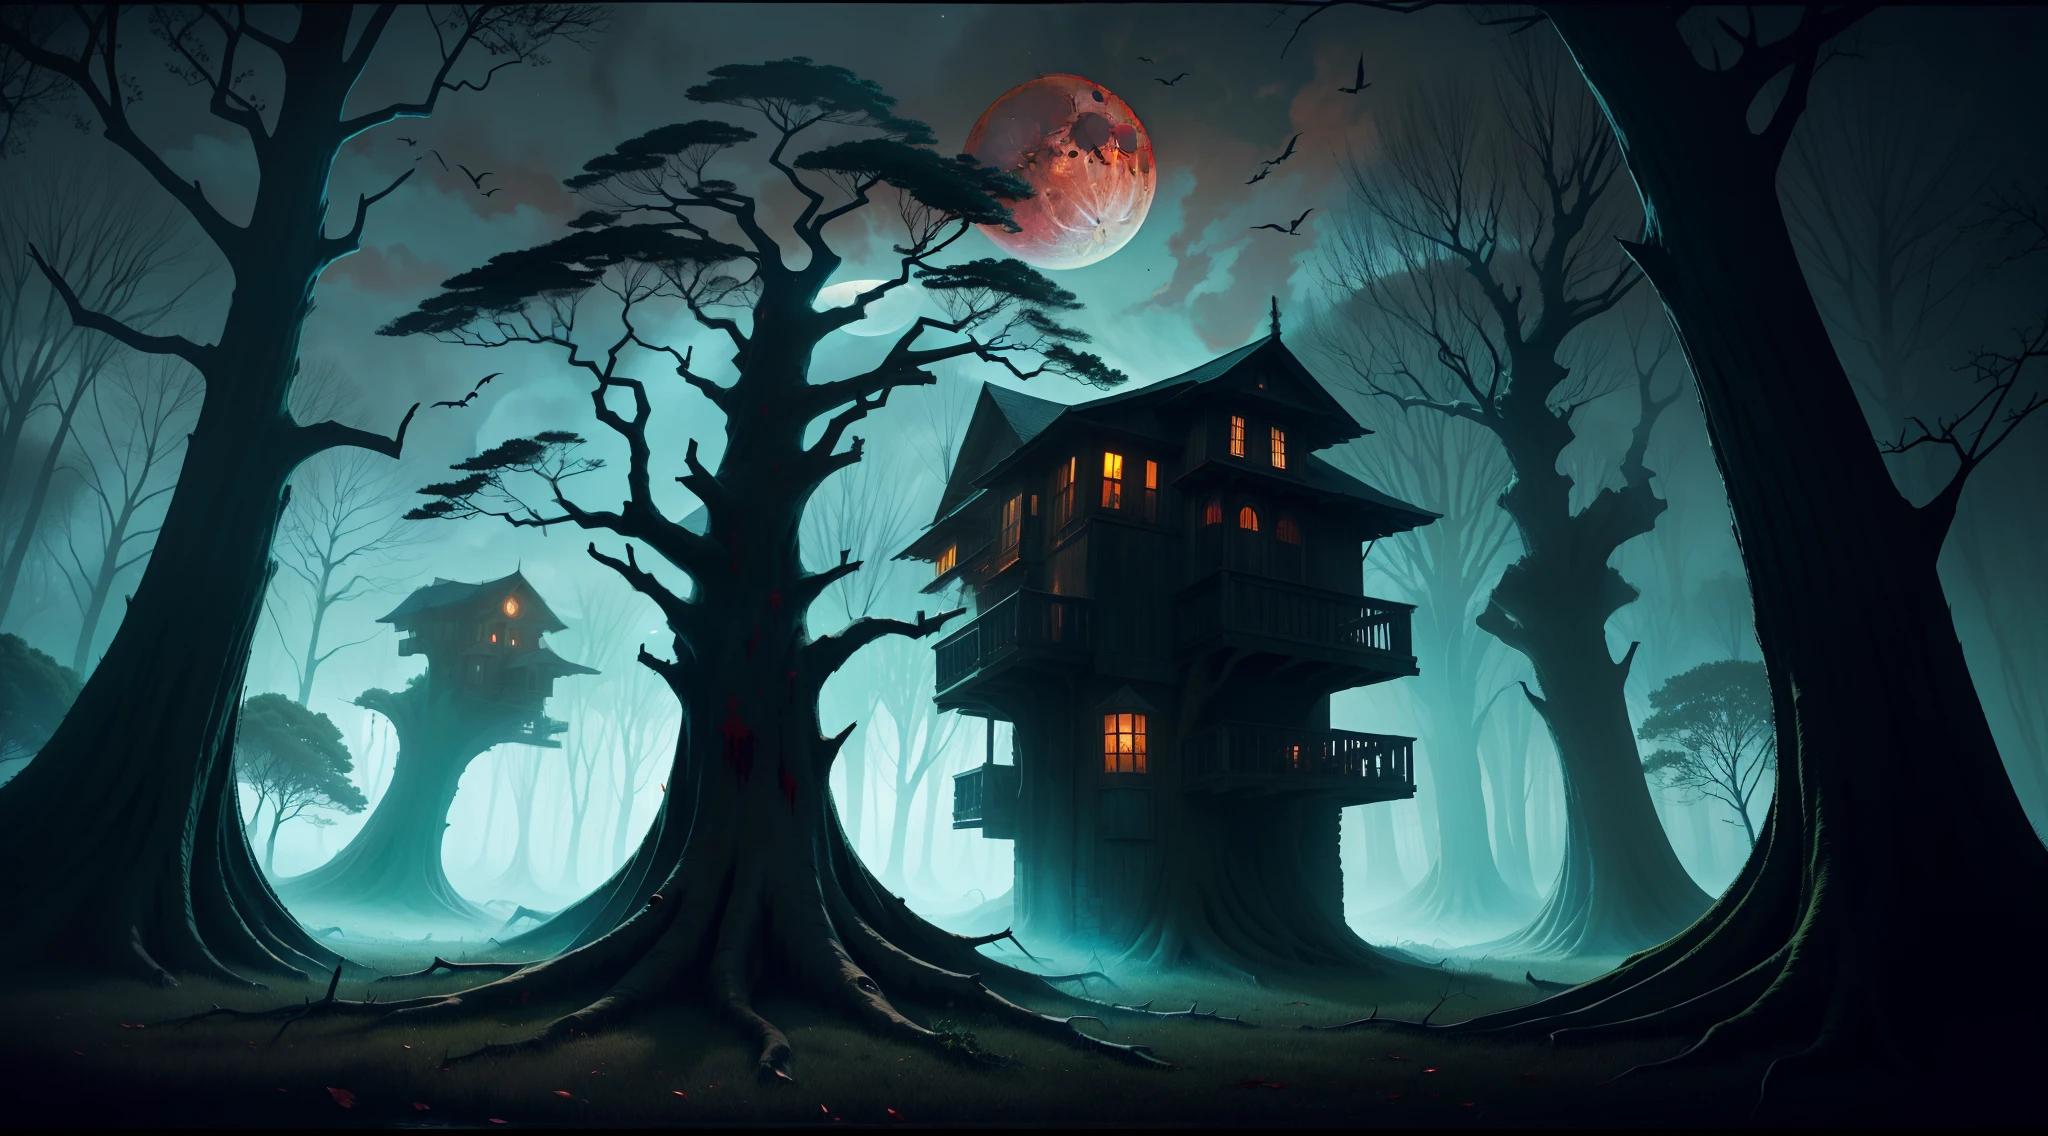 巨大的枯树像阴险的哨兵一样耸立. 在天空血月的笼罩下, 令人难忘的黑暗和神秘的境界.